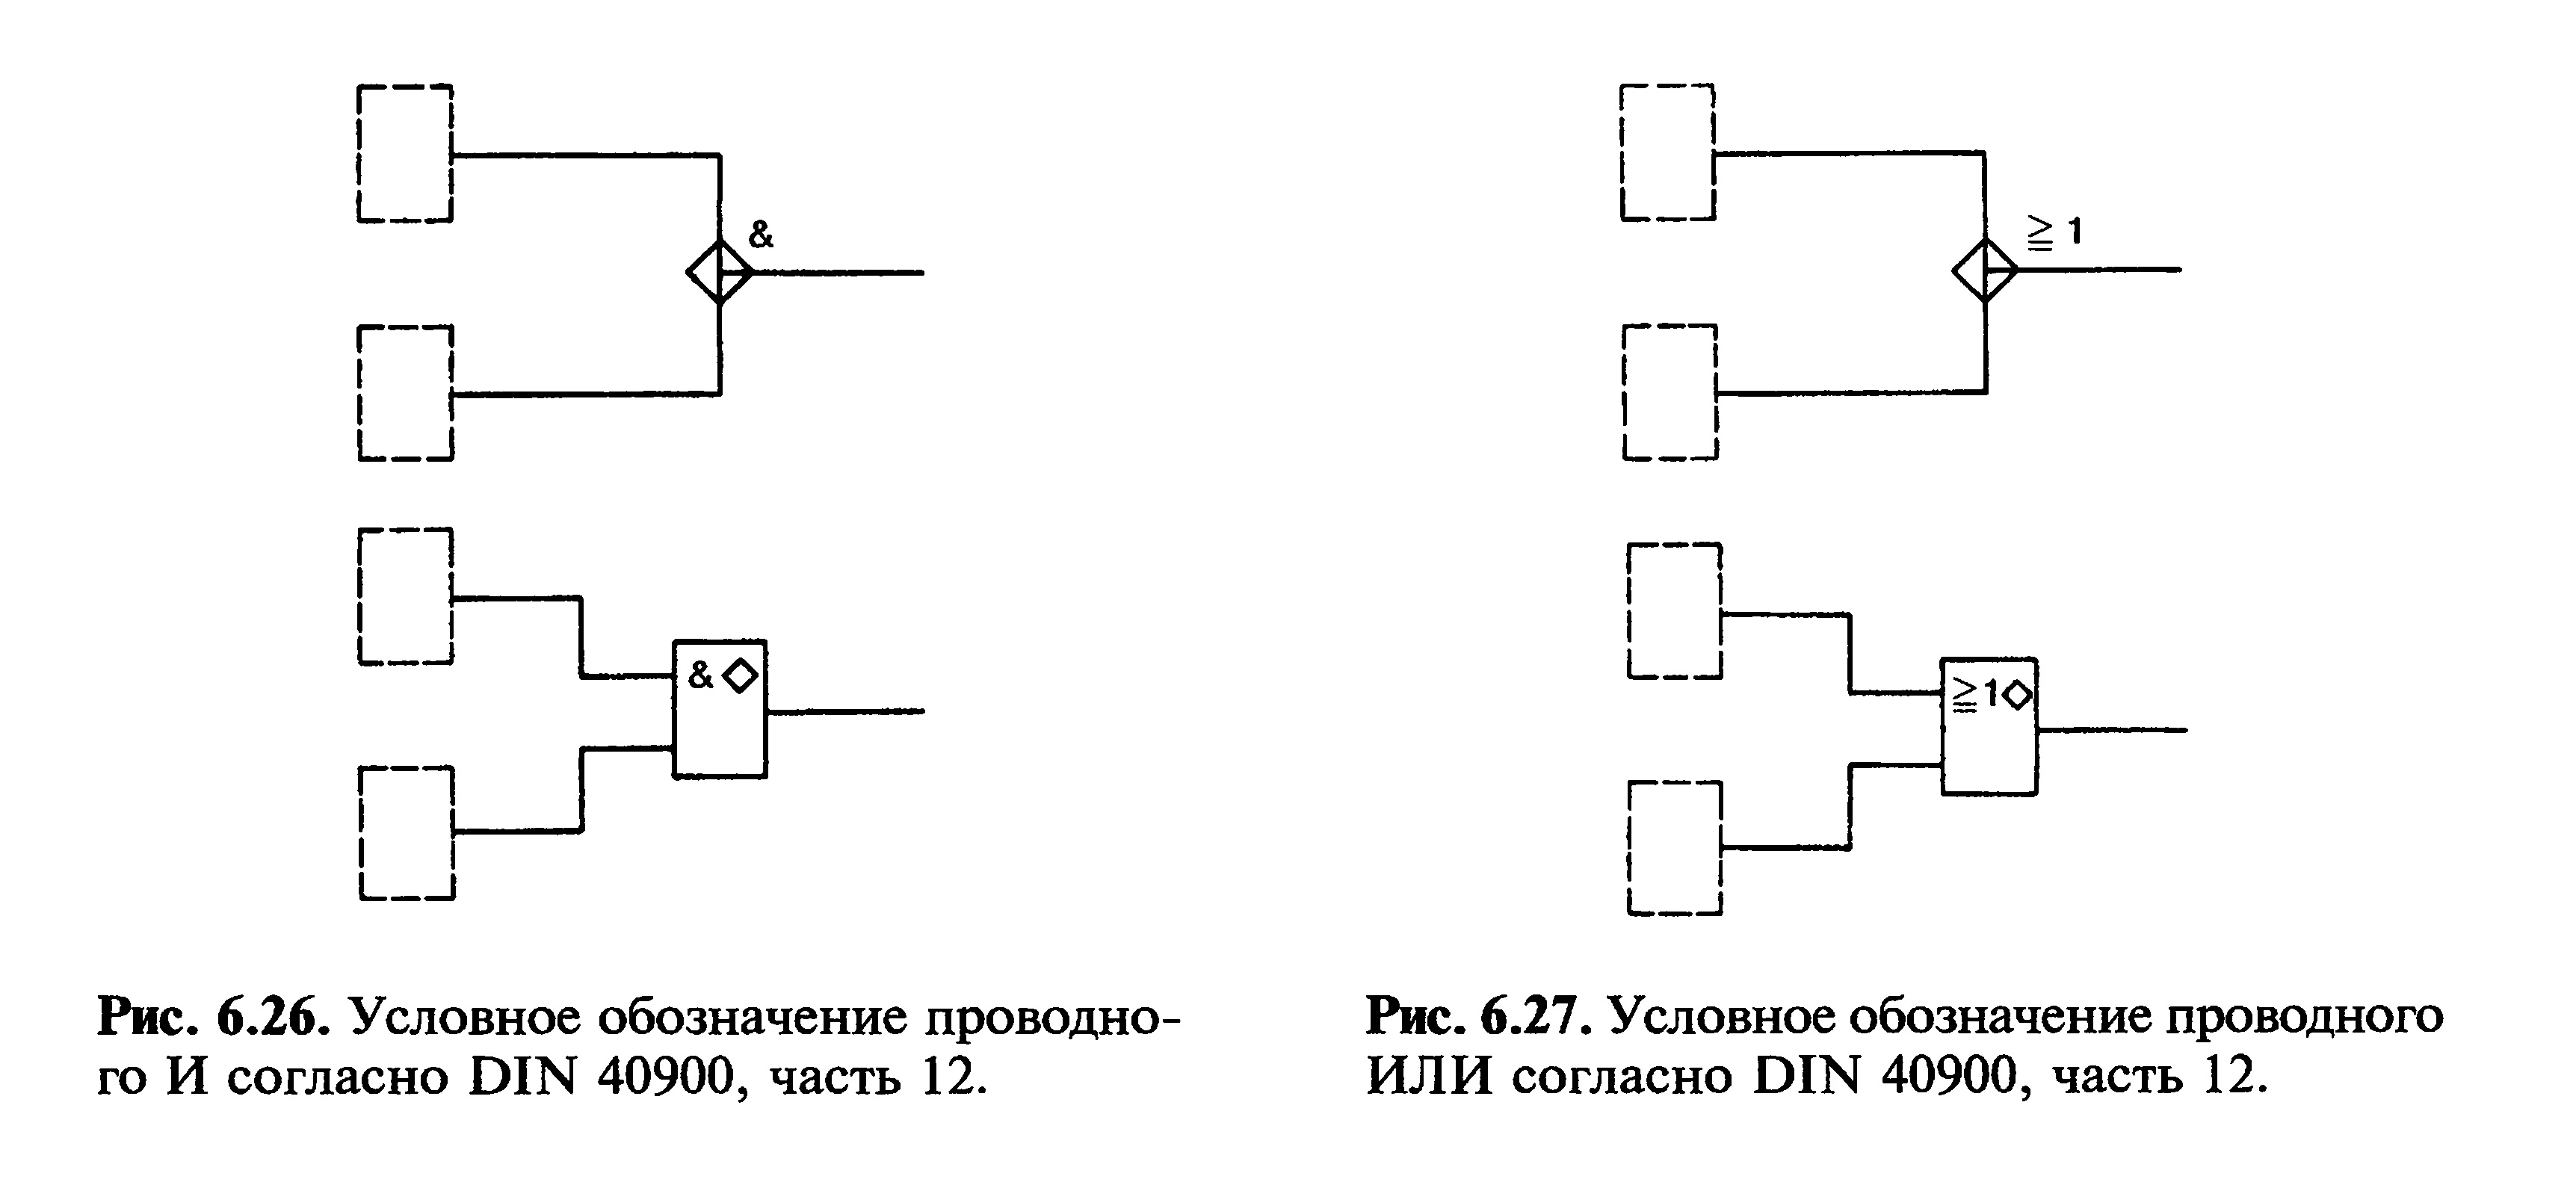 Условное обозначение проводного "И" согласно DIN 40900